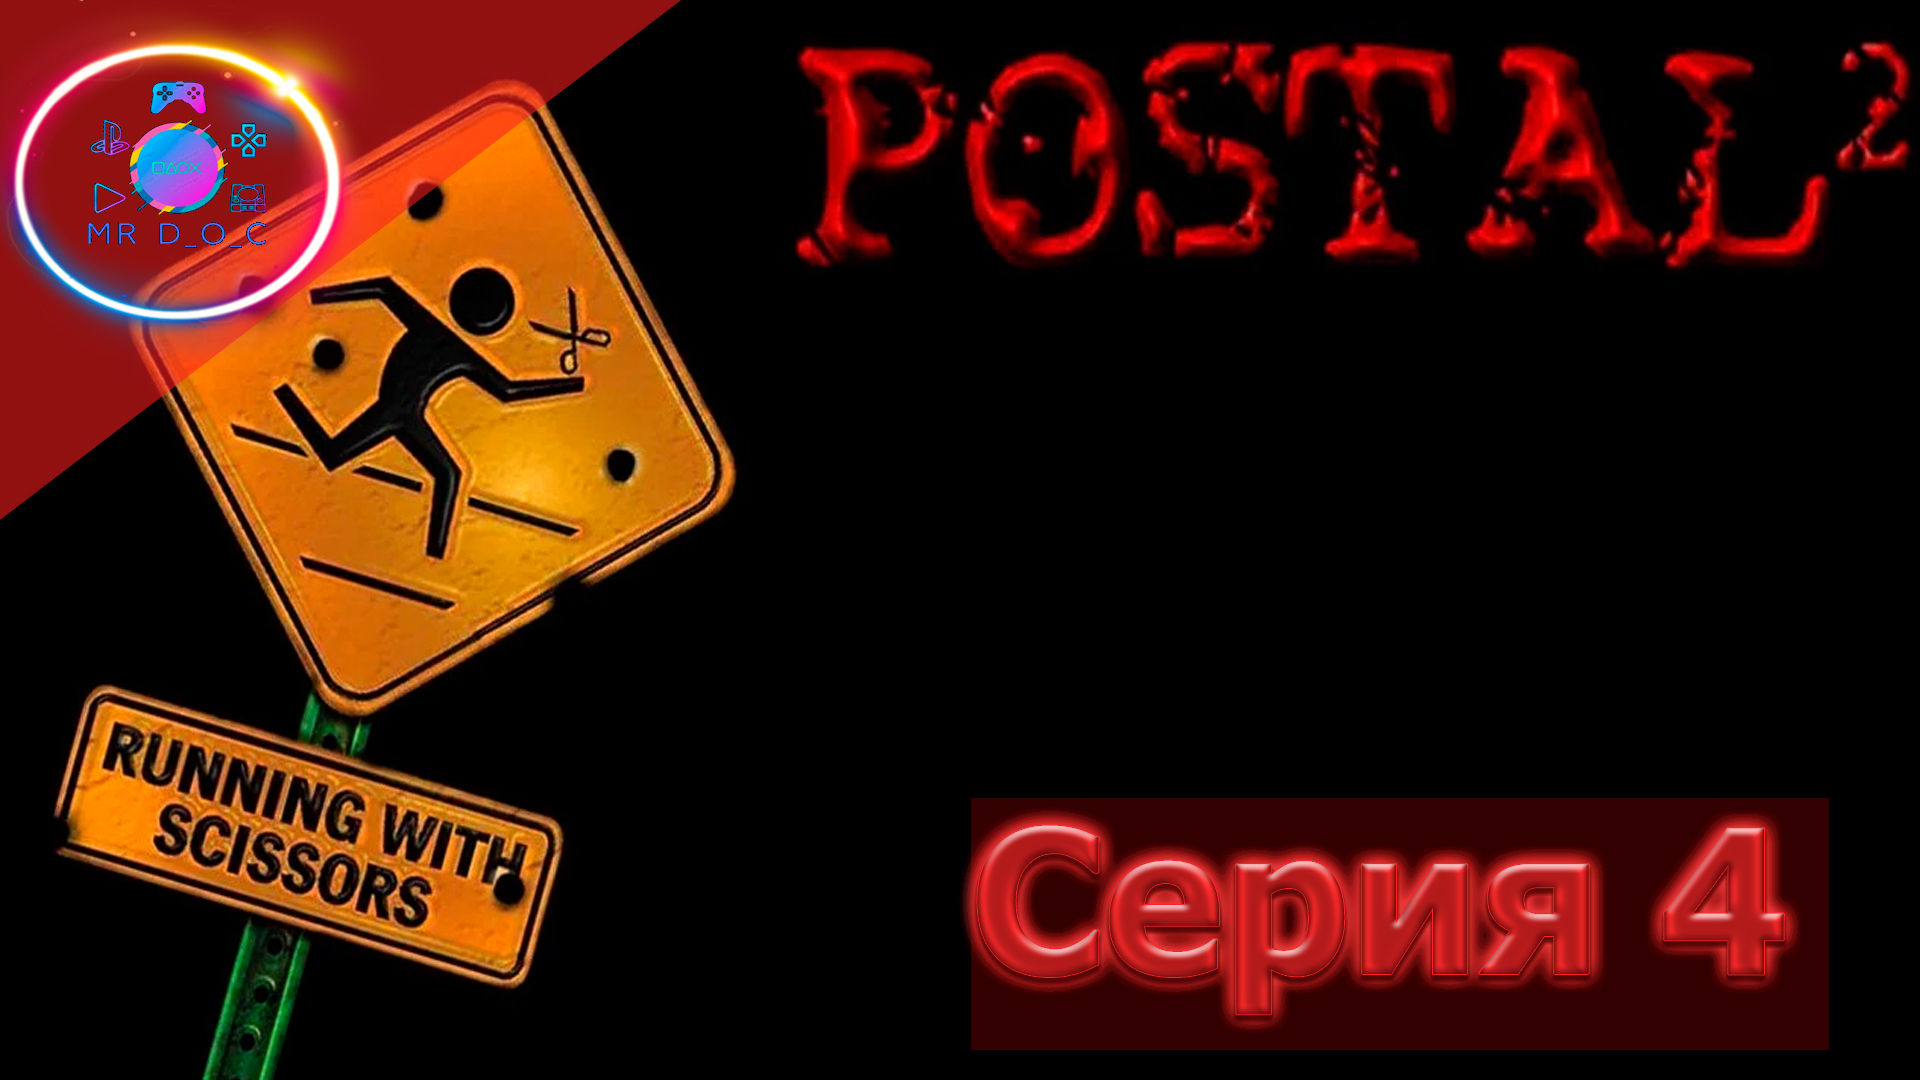 Postal 2 awp delete review торрент фото 80